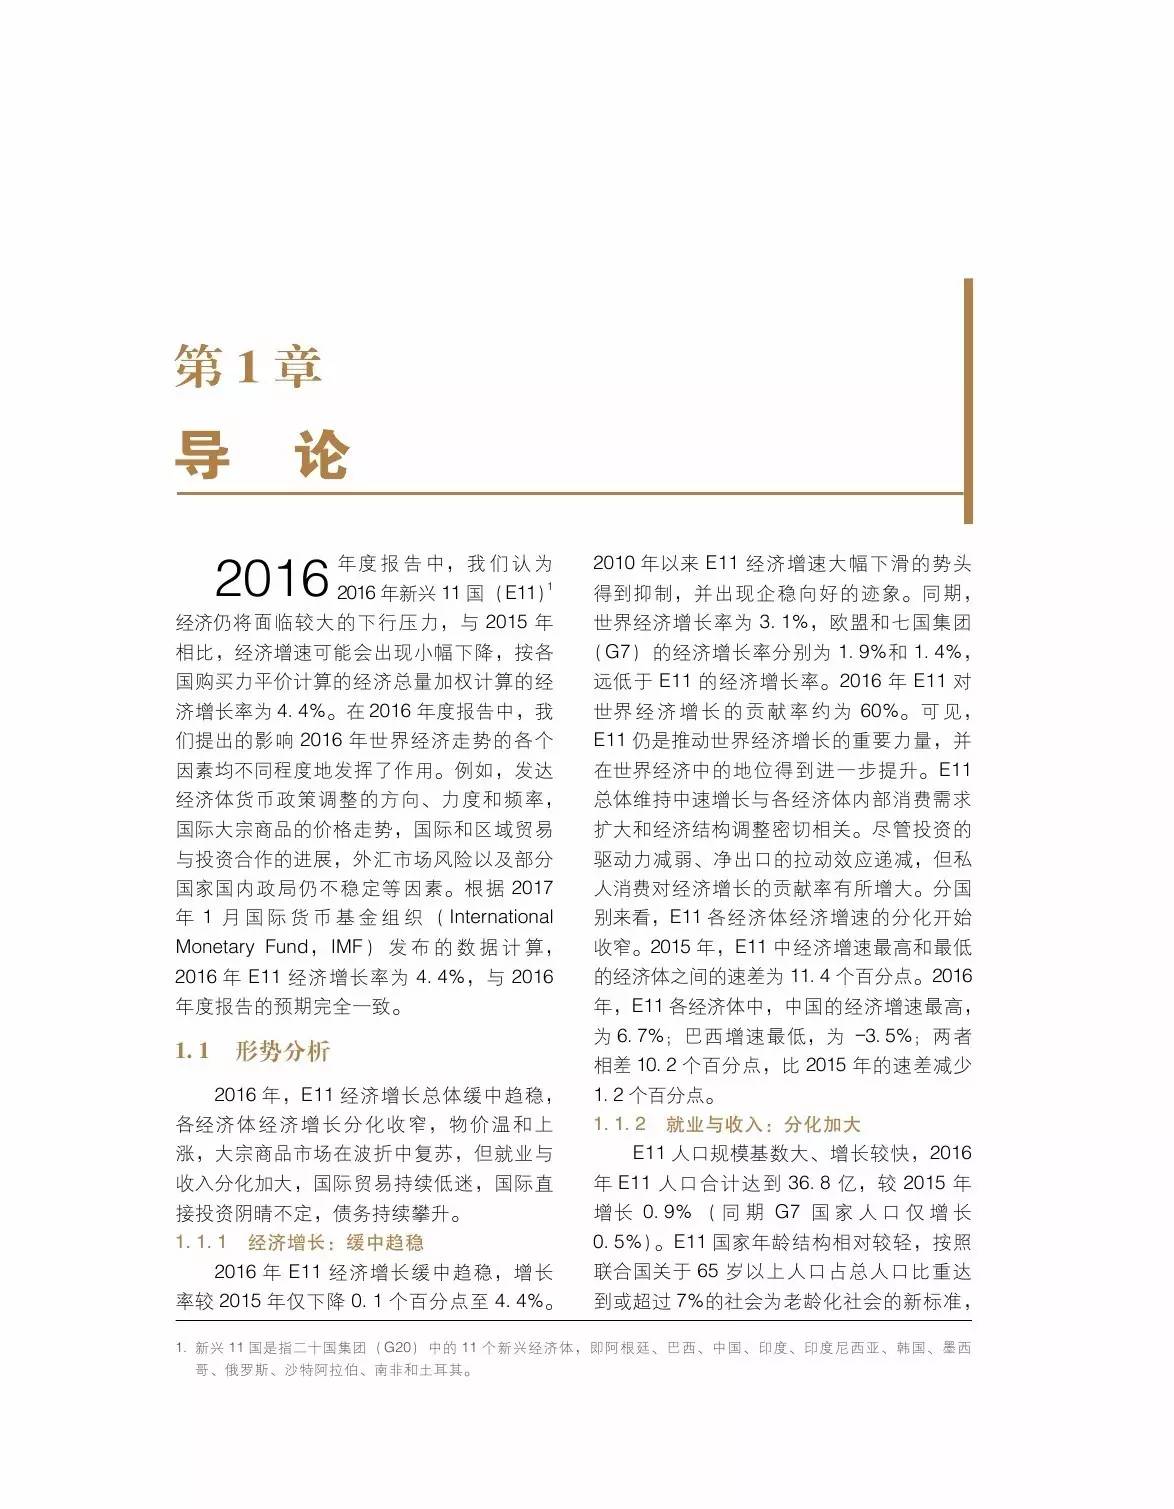 博鳌亚洲论坛:《新兴经济体发展2017年度报告》